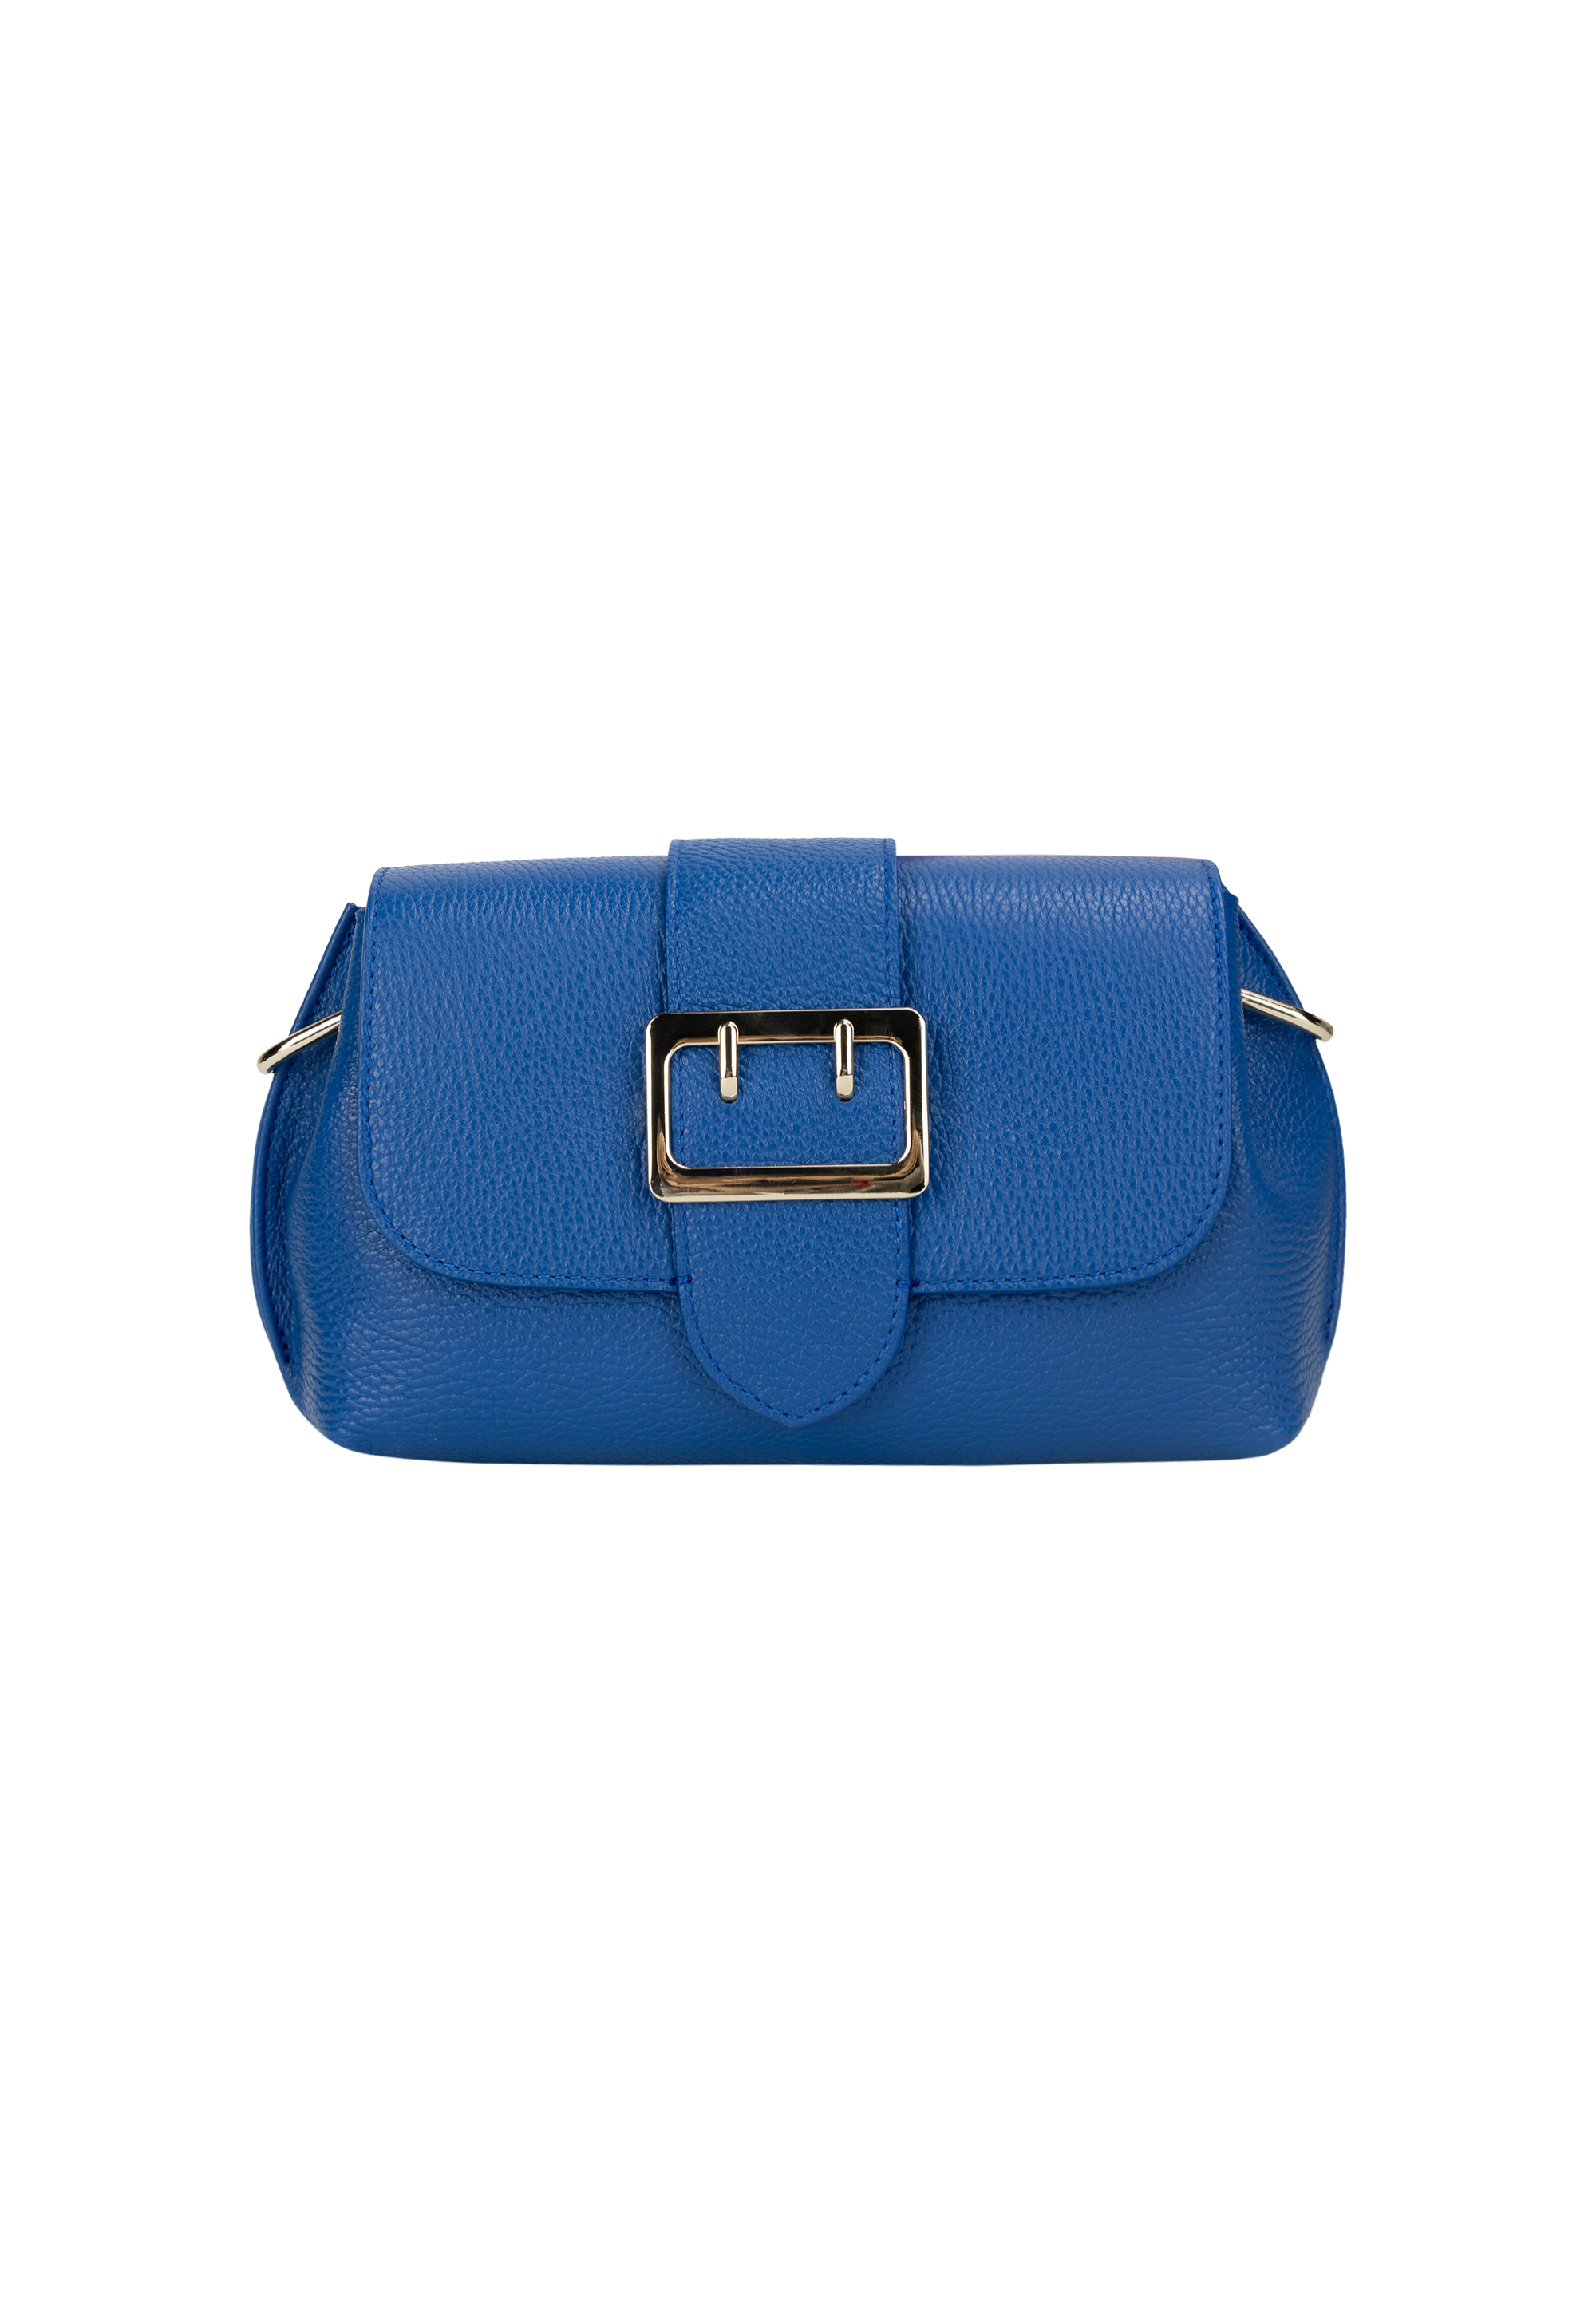 Сумка через плечо NAEMI Handtasche, цвет Azurblau сумка через плечо naemi handtasche цвет amarena